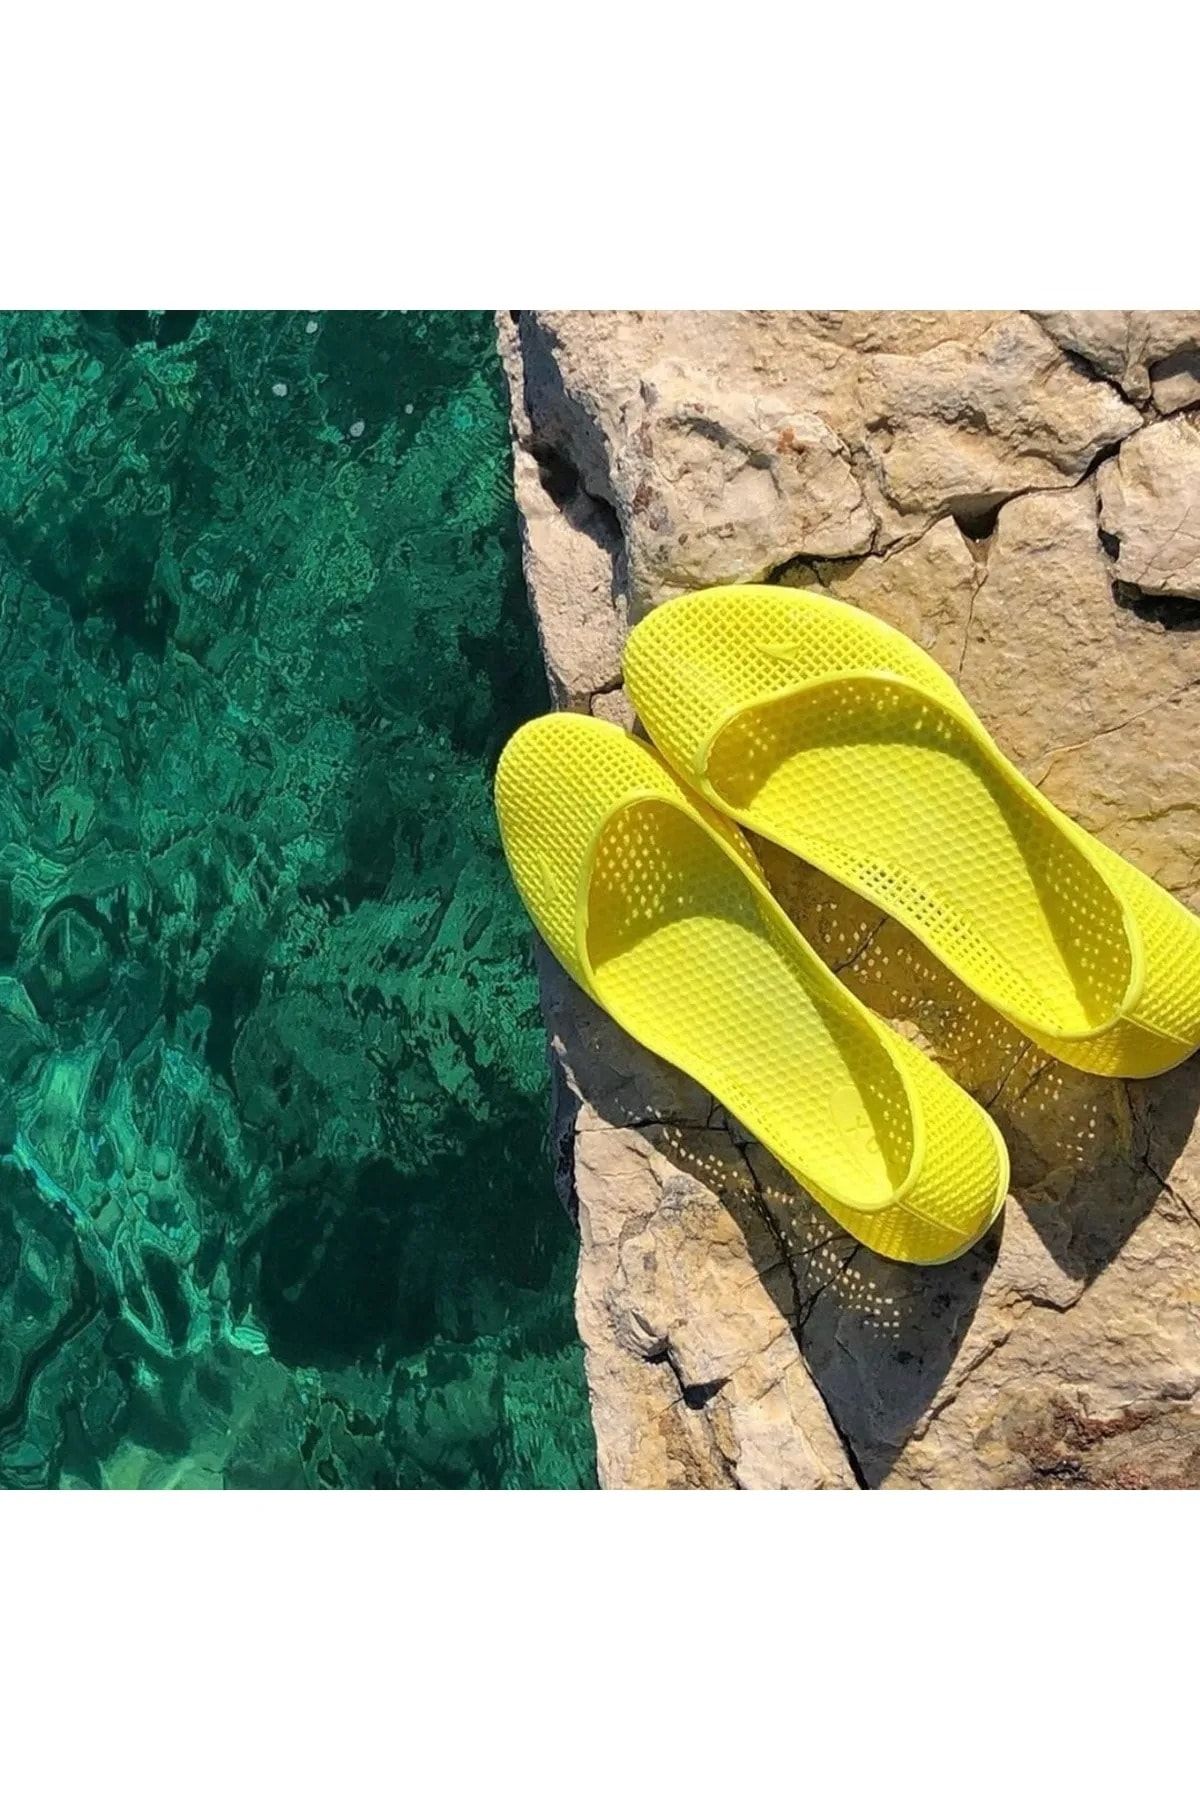 VASKONİ Deniz Ayakkabısı Kaliteli Havuz Deniz Plaj Ucuz Terlik